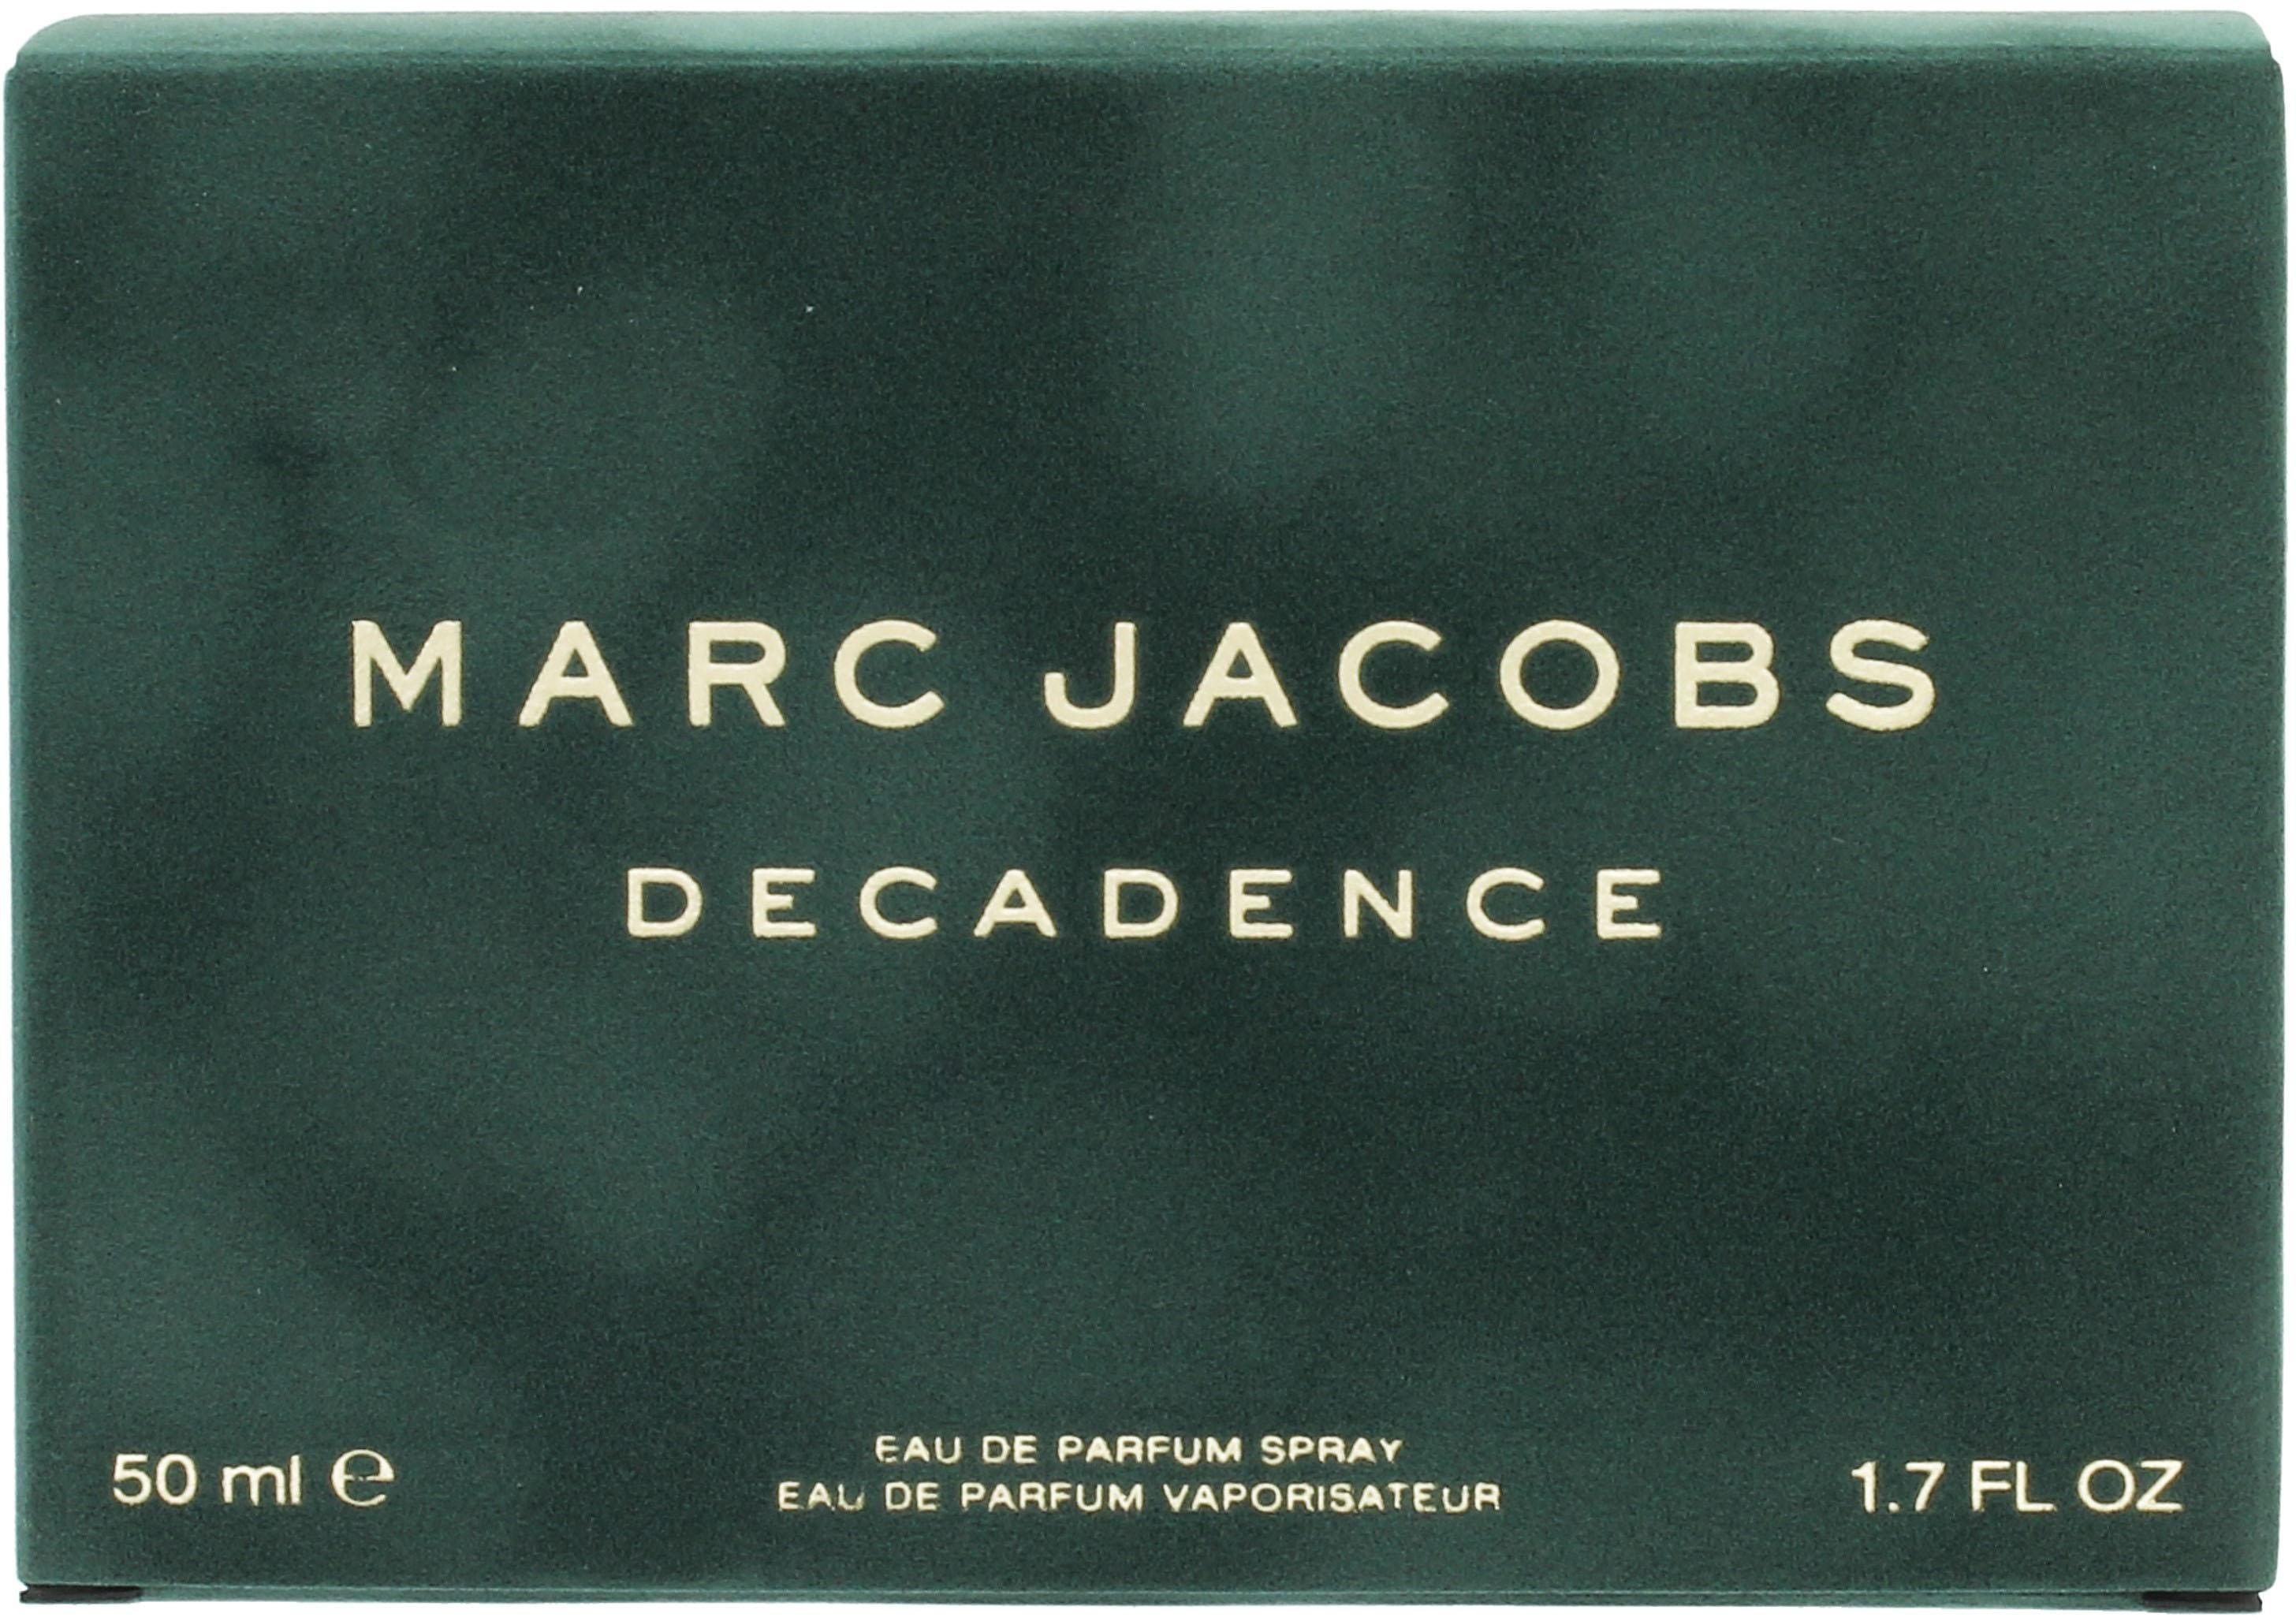 MARC JACOBS Eau de Decadence Parfum